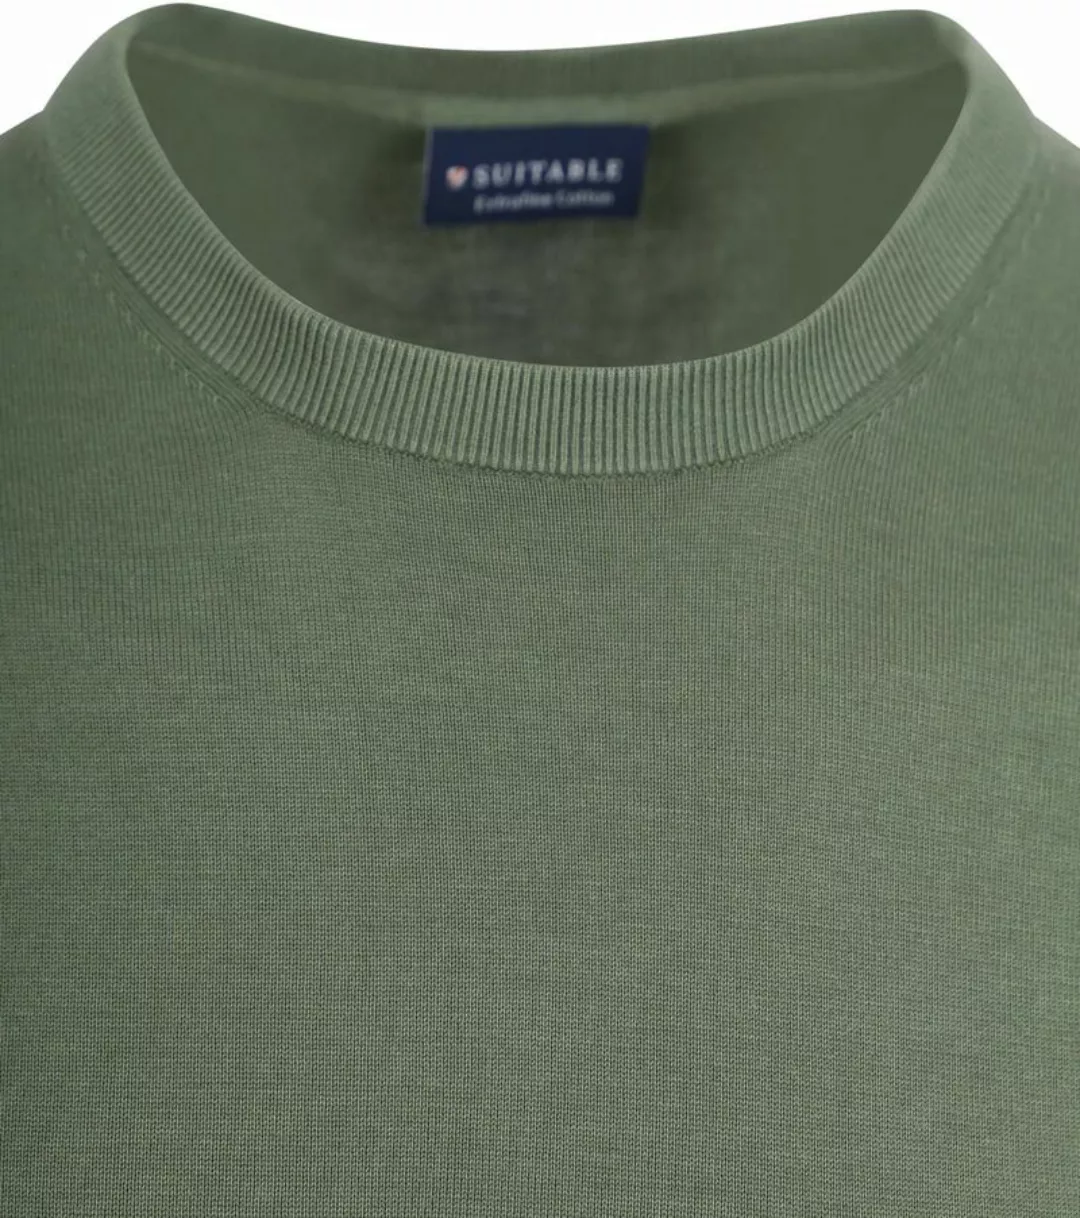 Suitable Knitted T-shirt Grün - Größe M günstig online kaufen